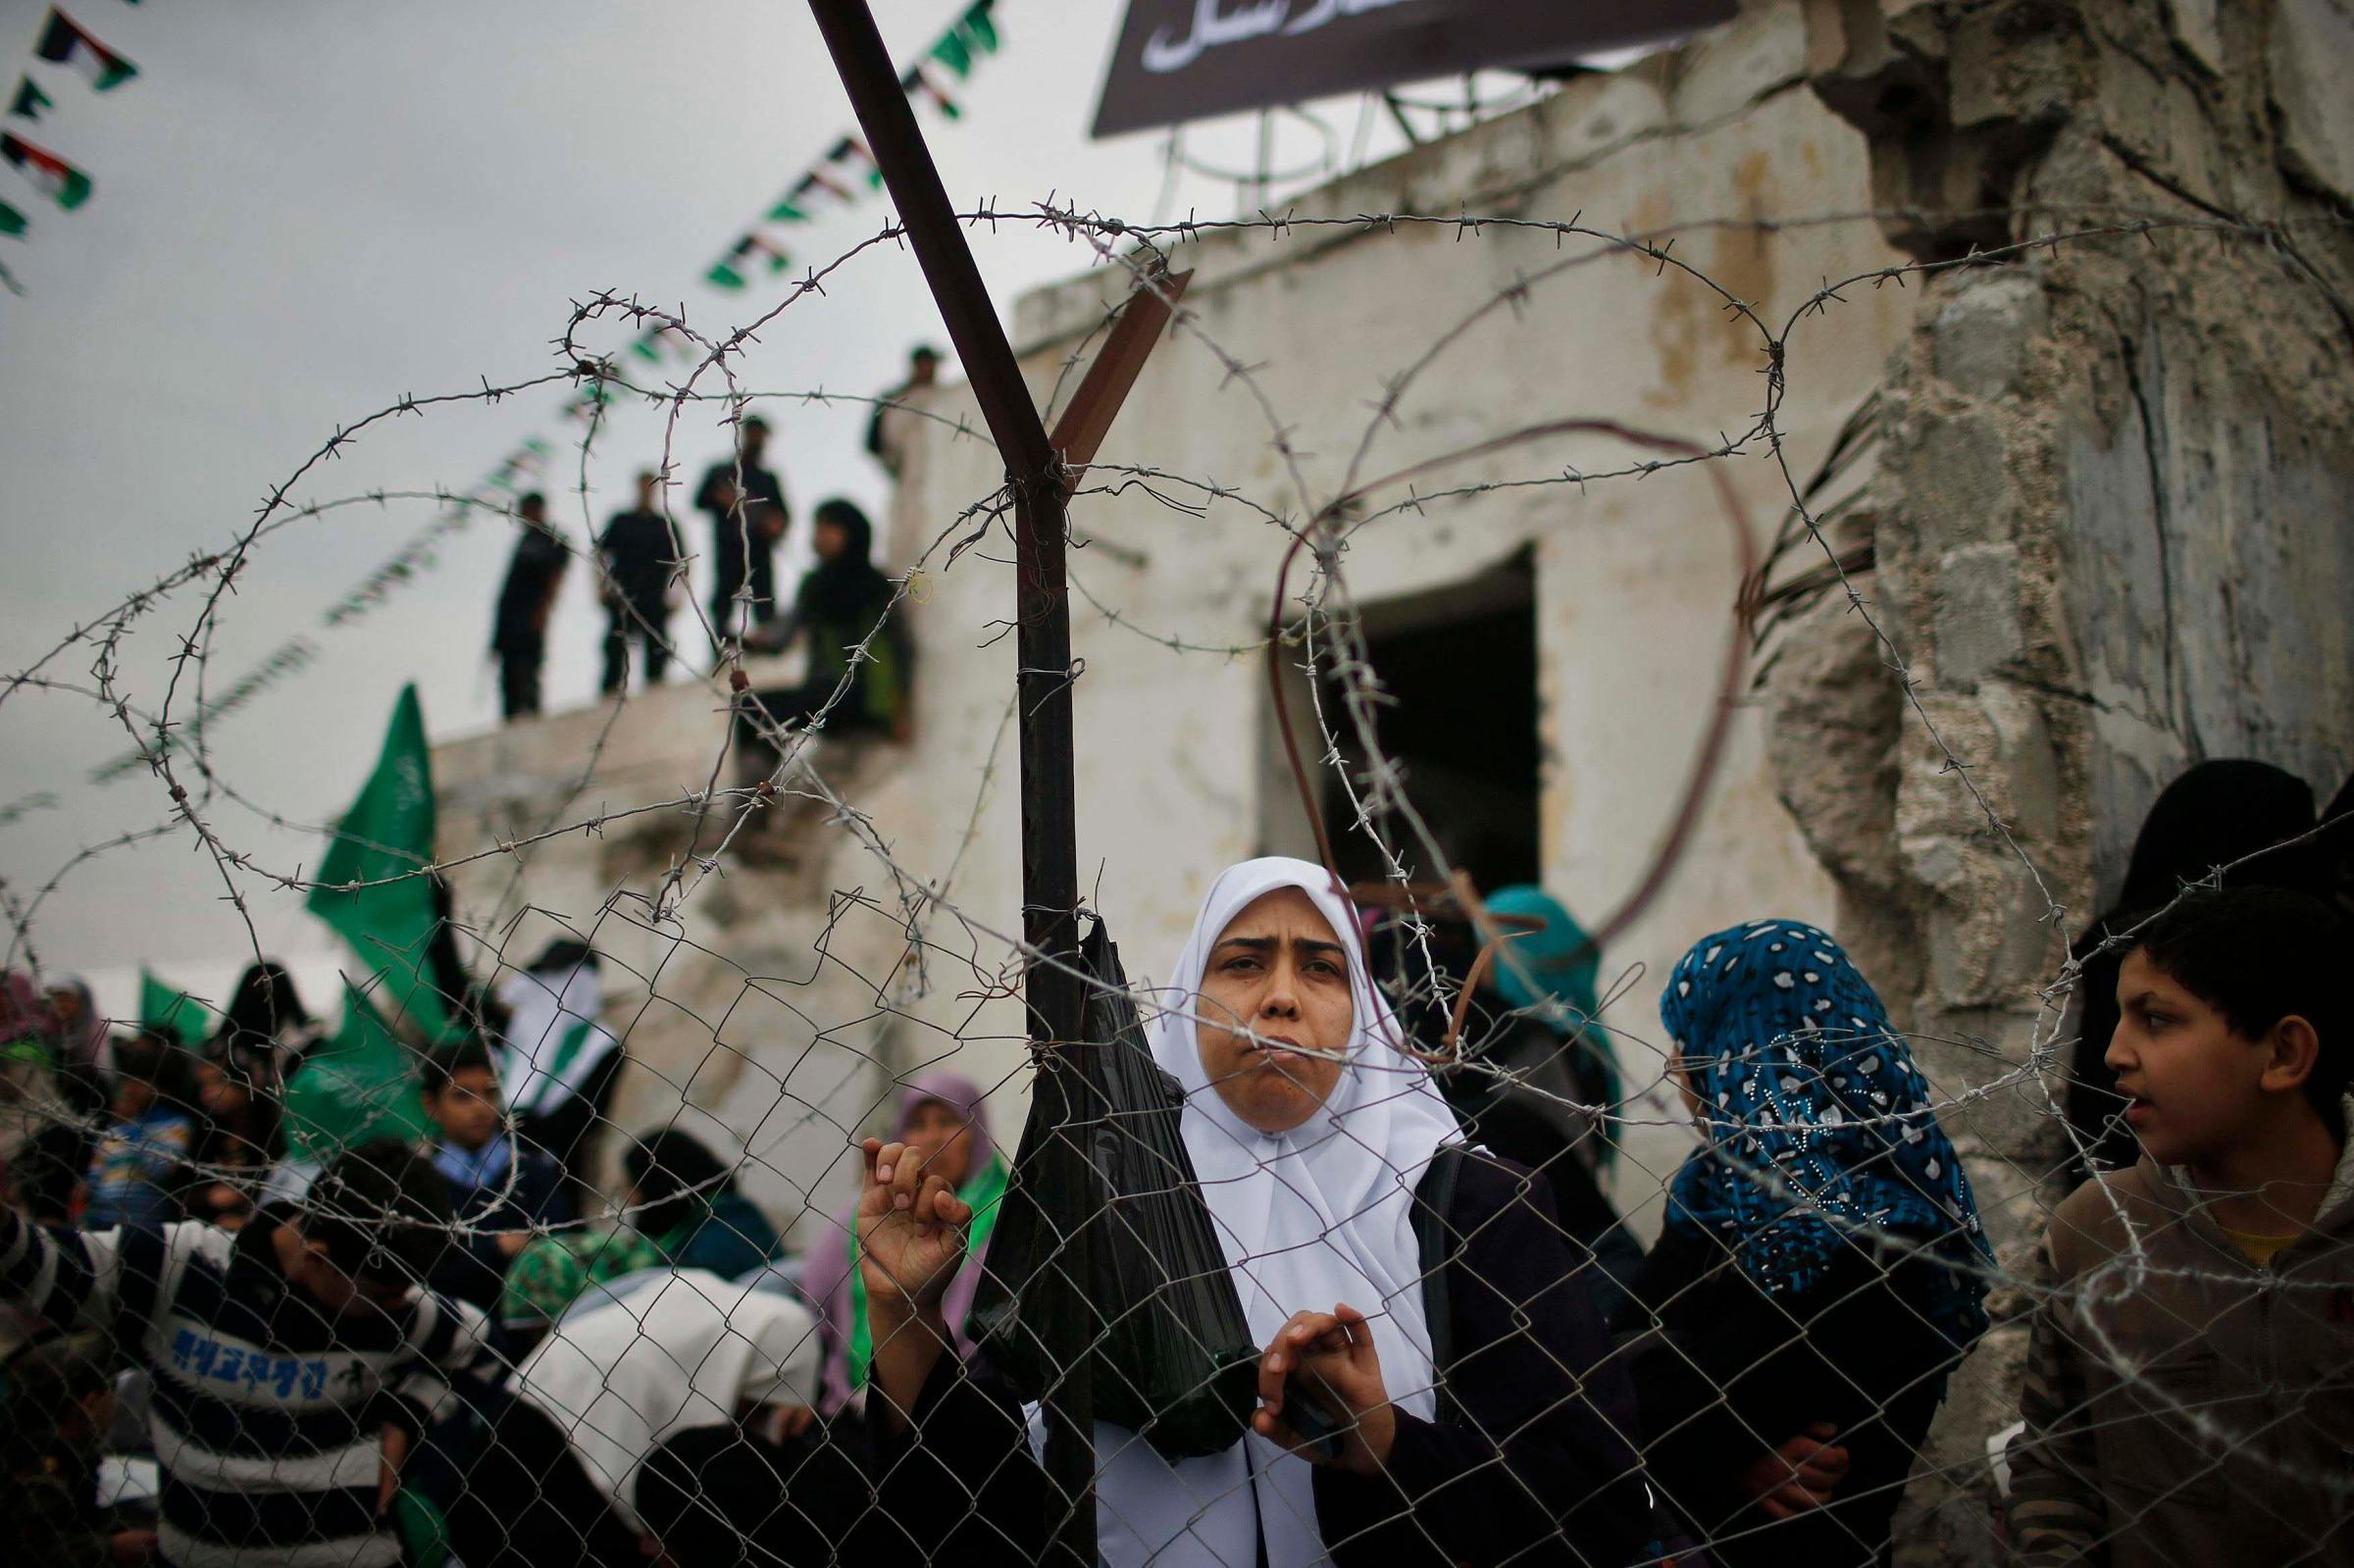 Civil unrest in Palestine